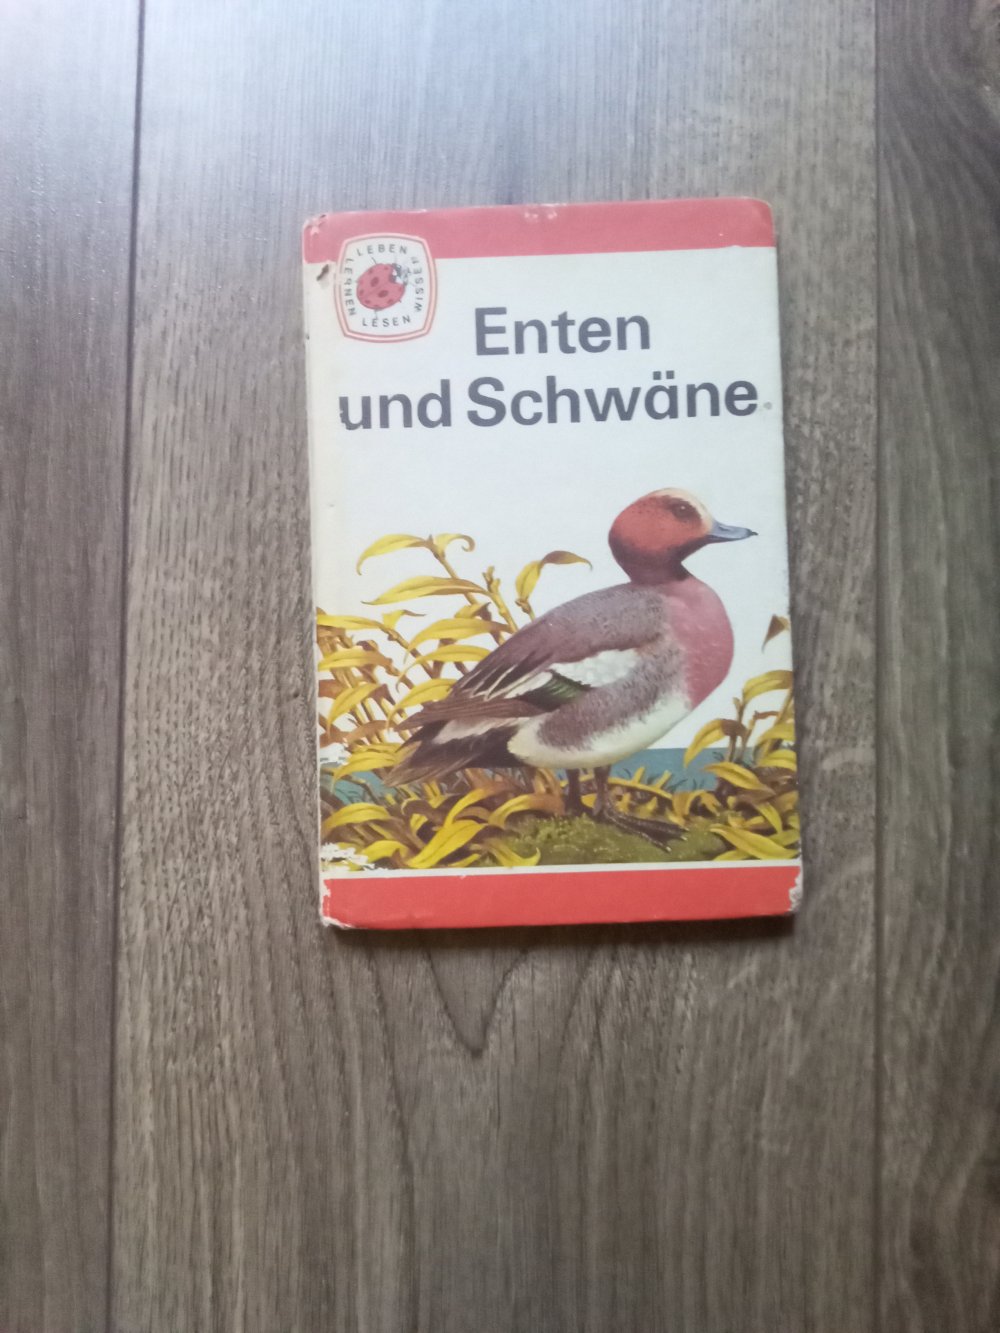 Enten und Schwäne Sachbuch Bd 2 Lesen leben lernen wissen